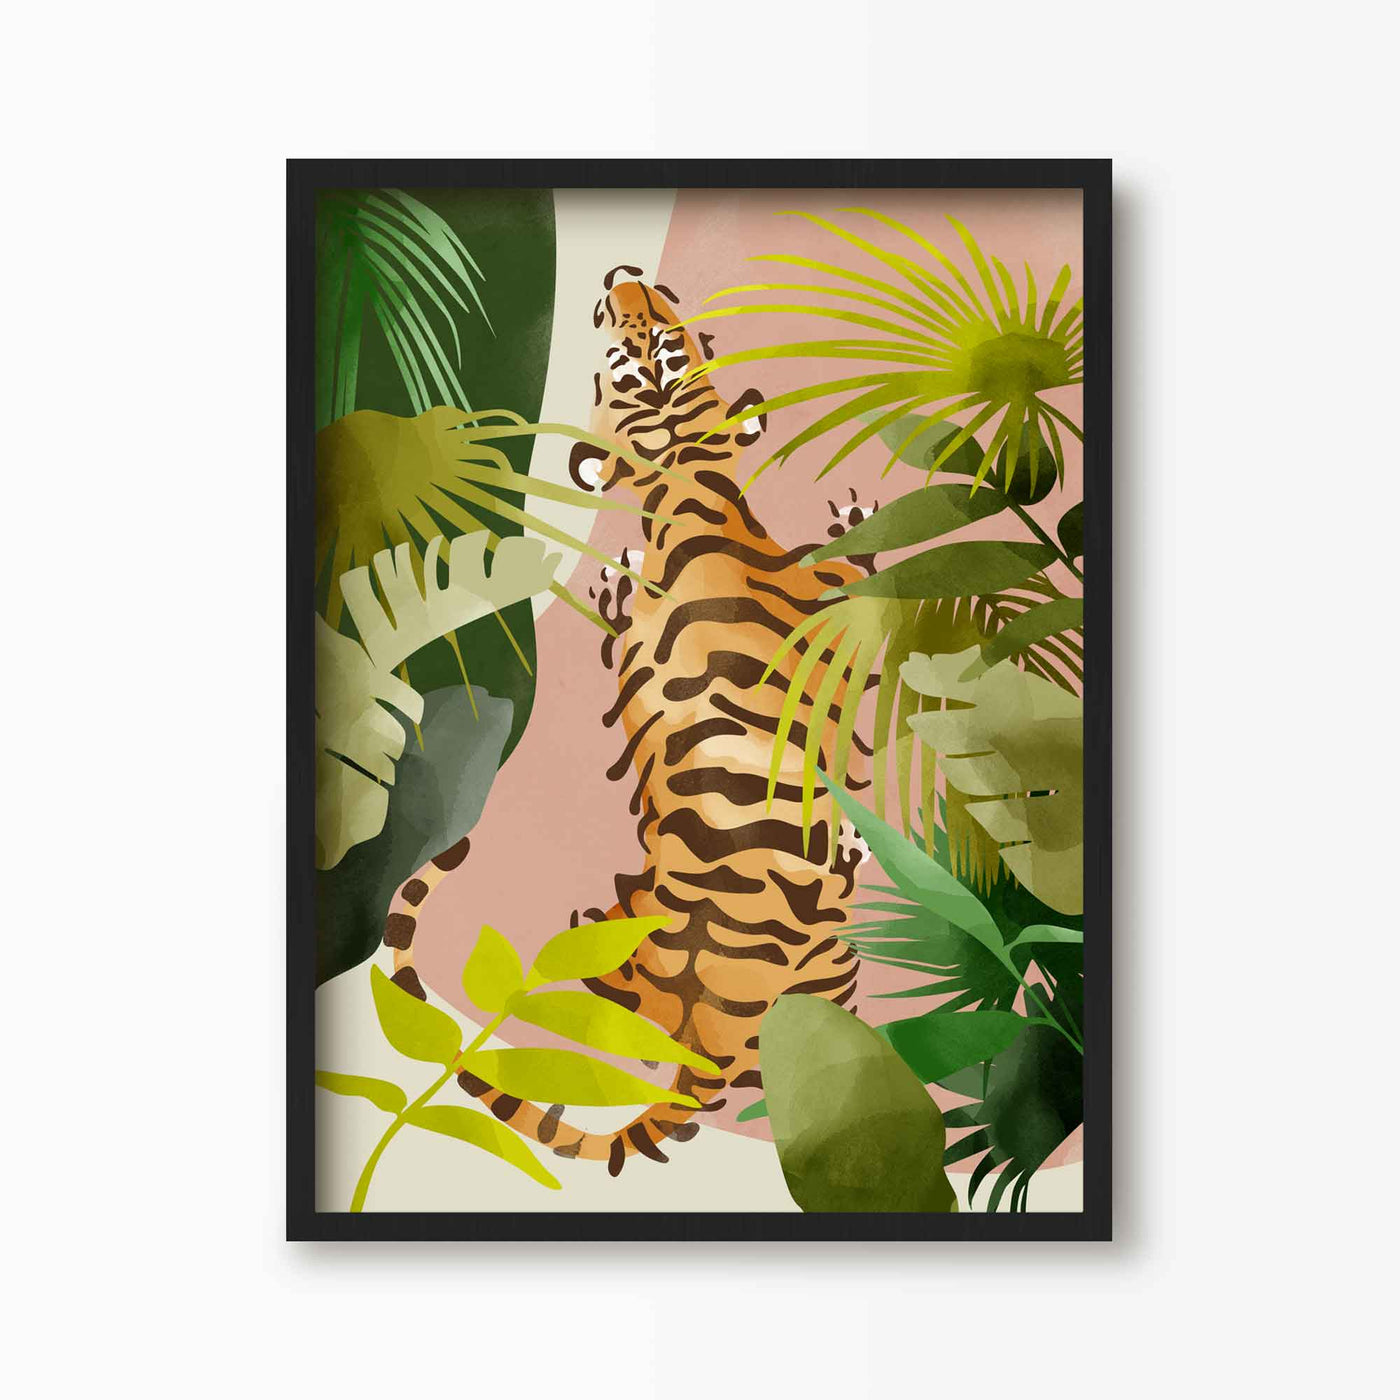 Green Lili 30x40cm / Black Jungle Tiger Art Print